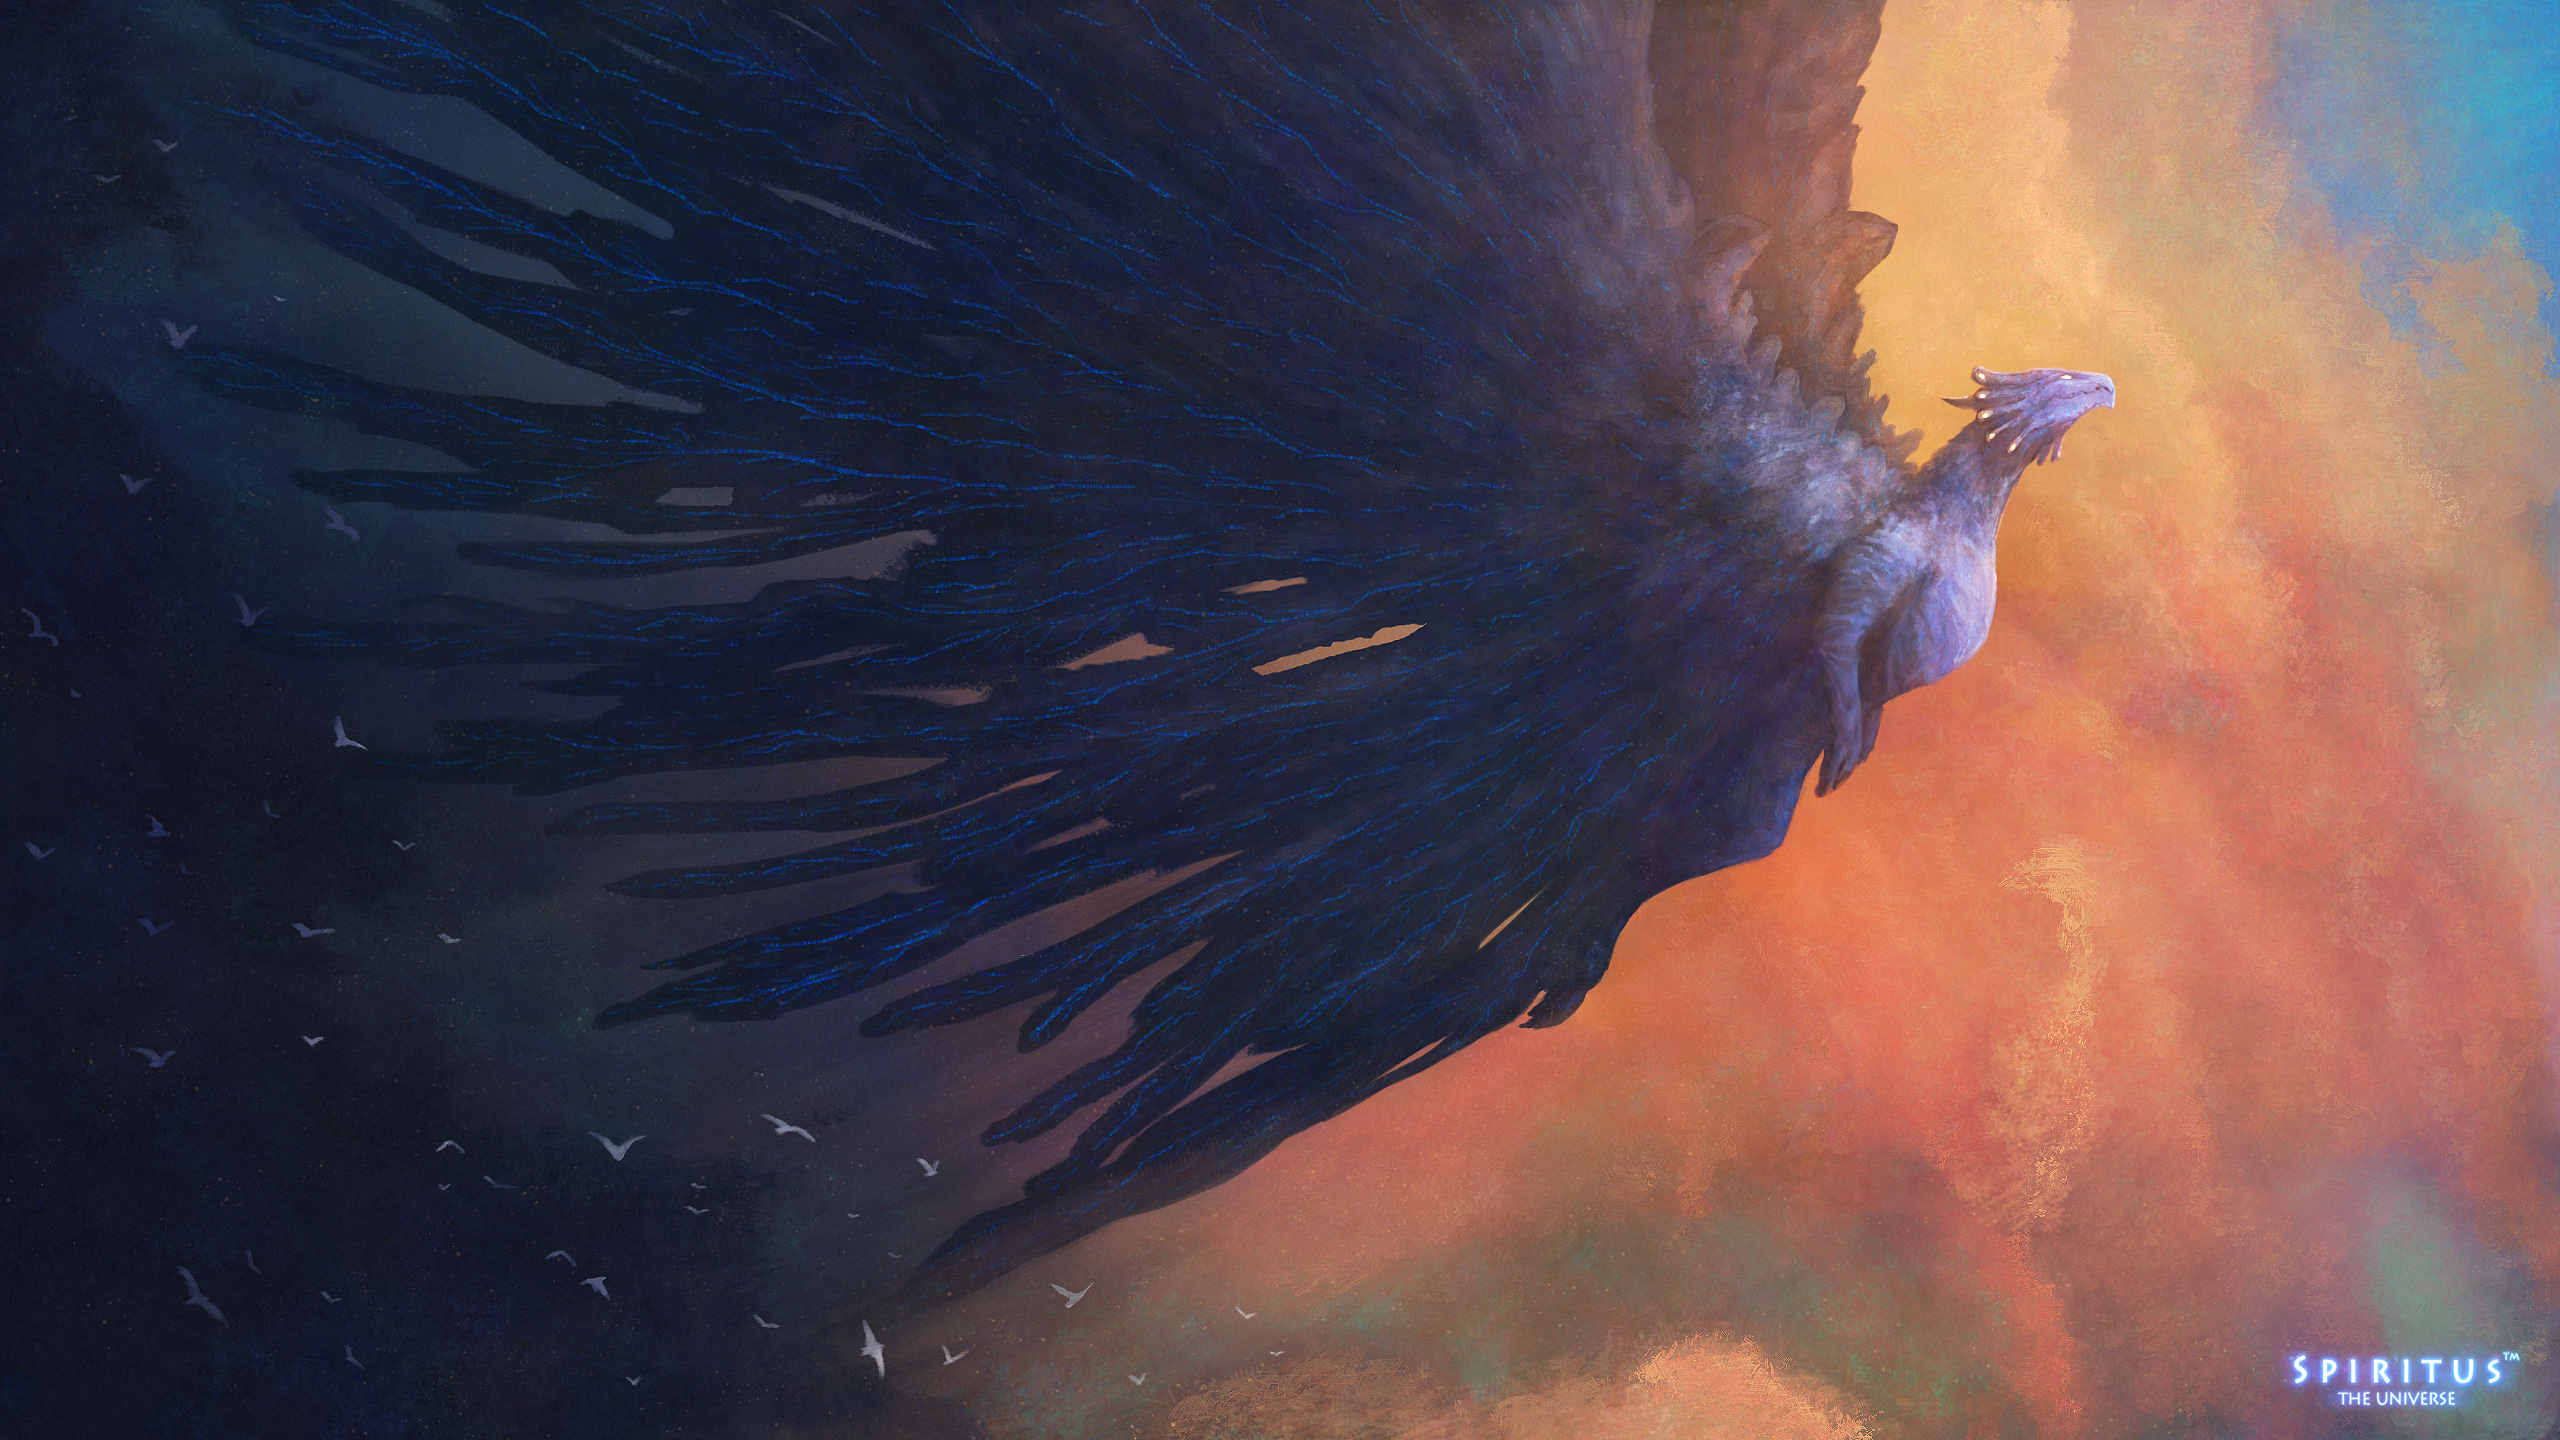 General 2560x1440 dragon dark wings clouds fantasy art creature artwork sky